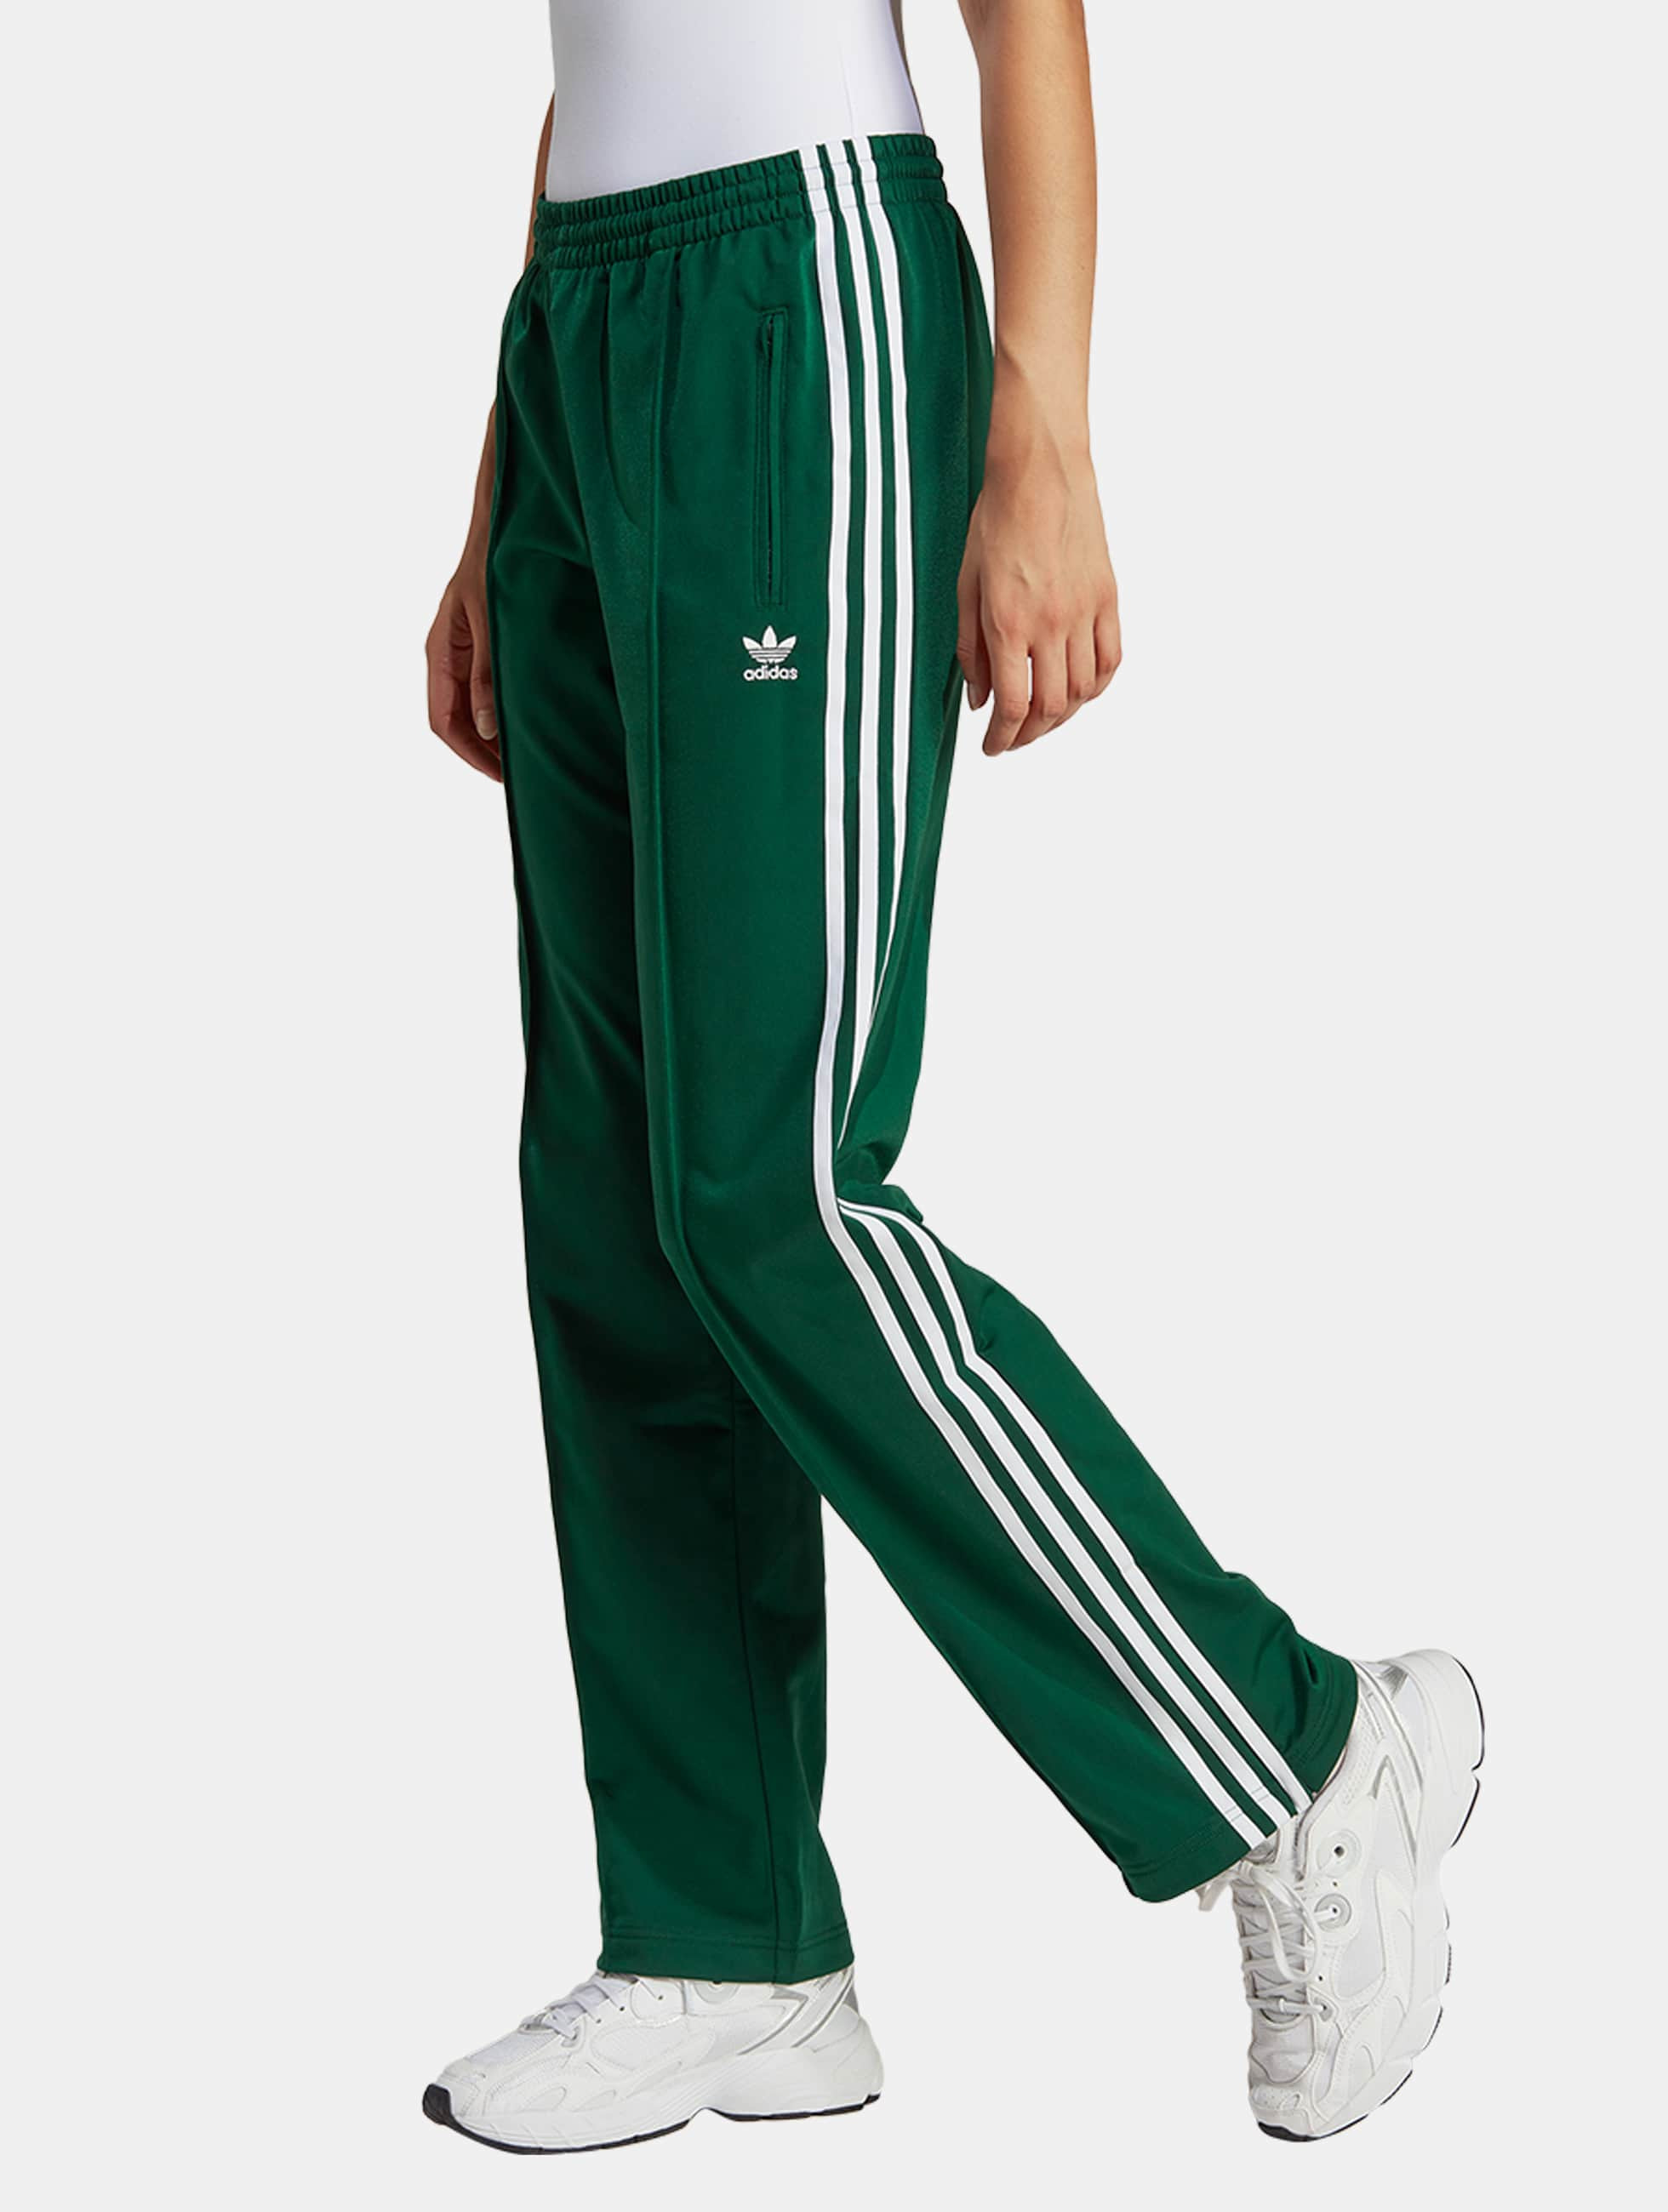 planter Monopoly leeuwerik adidas Originals broek / joggingbroek Firebird in groen 1048390